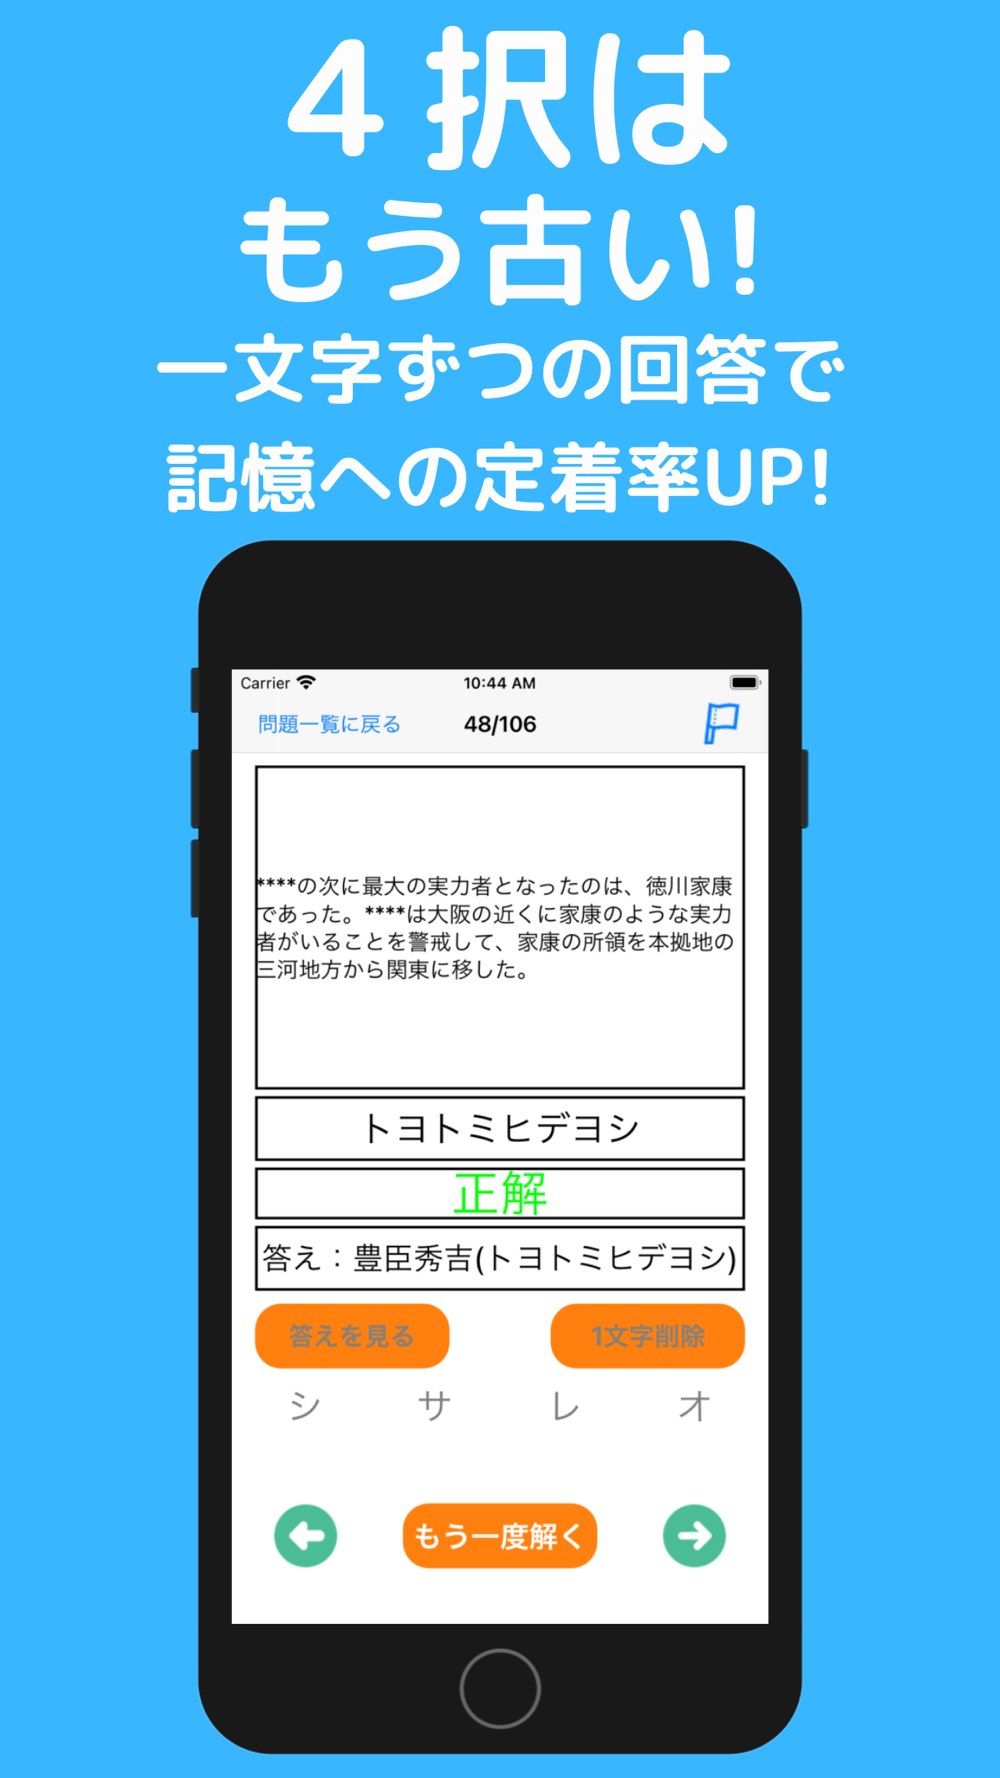 中学受験 まるごと歴史帳660 Download App For Iphone Steprimo Com